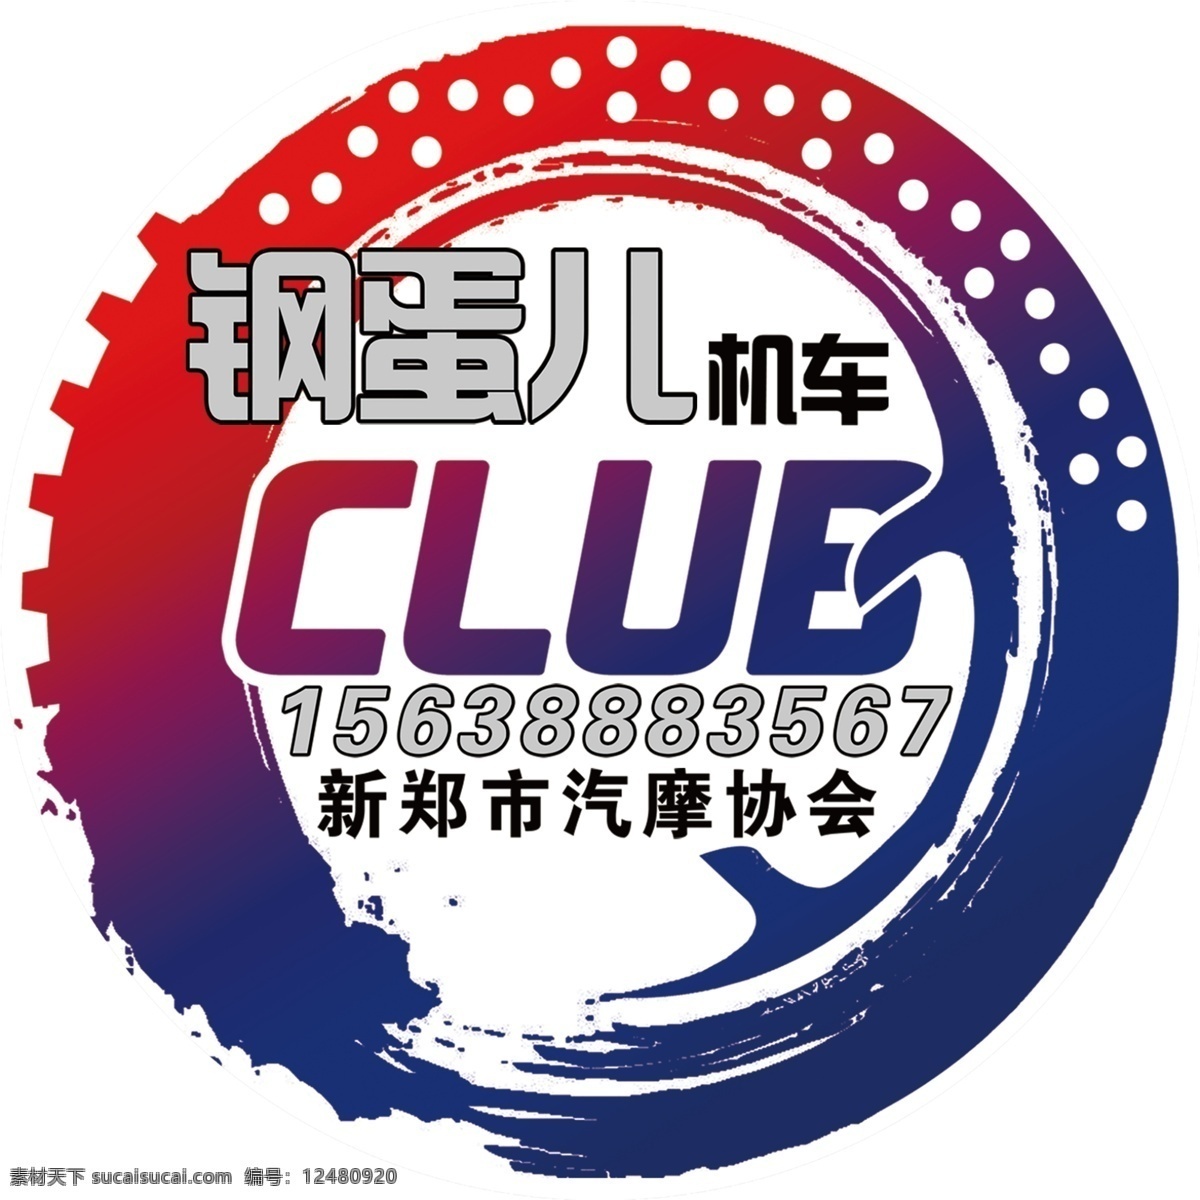 钢蛋儿机车 钢蛋 机车 俱乐部 标志 版面 logo设计